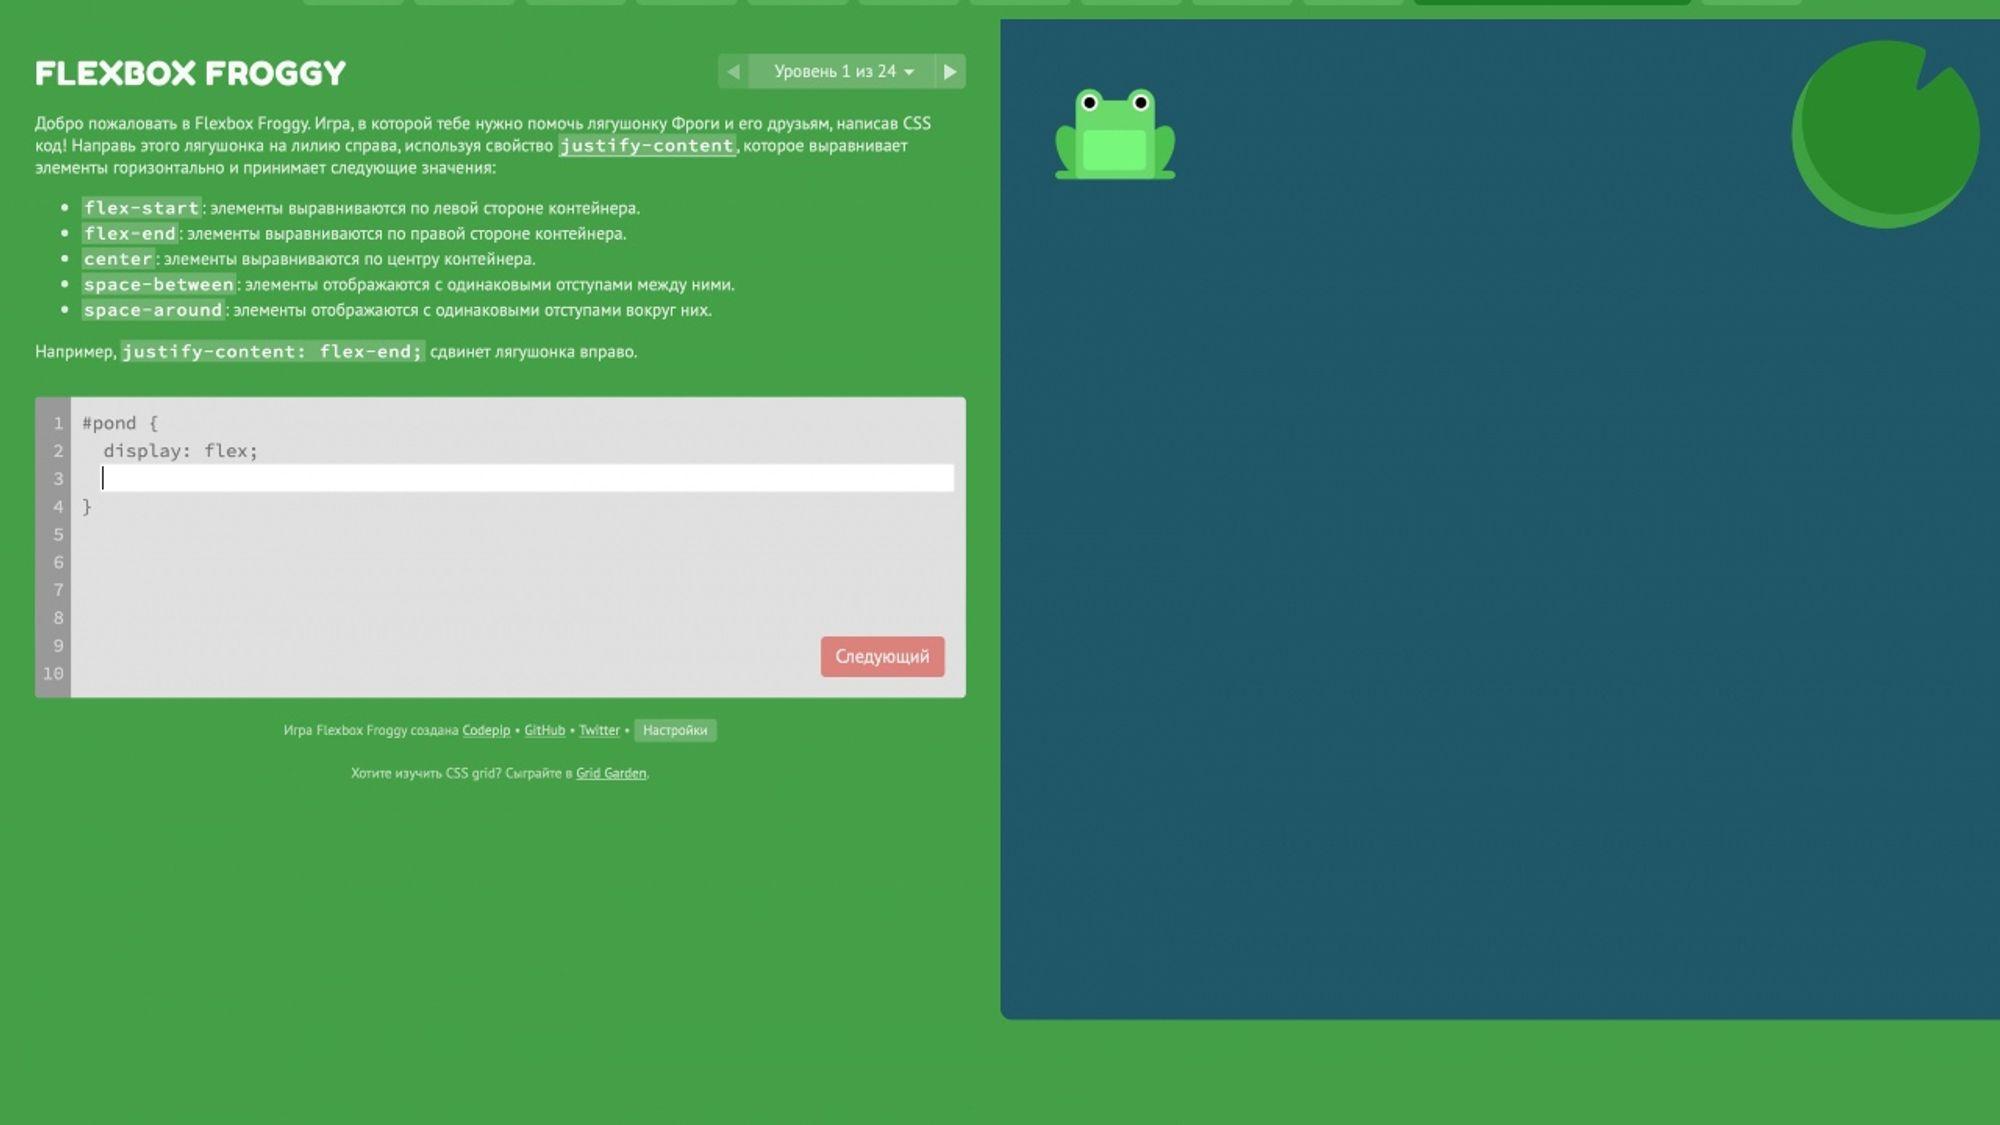 Интерфейс Flexbox Froggy, браузерной игры для изучения Flexbox CSS